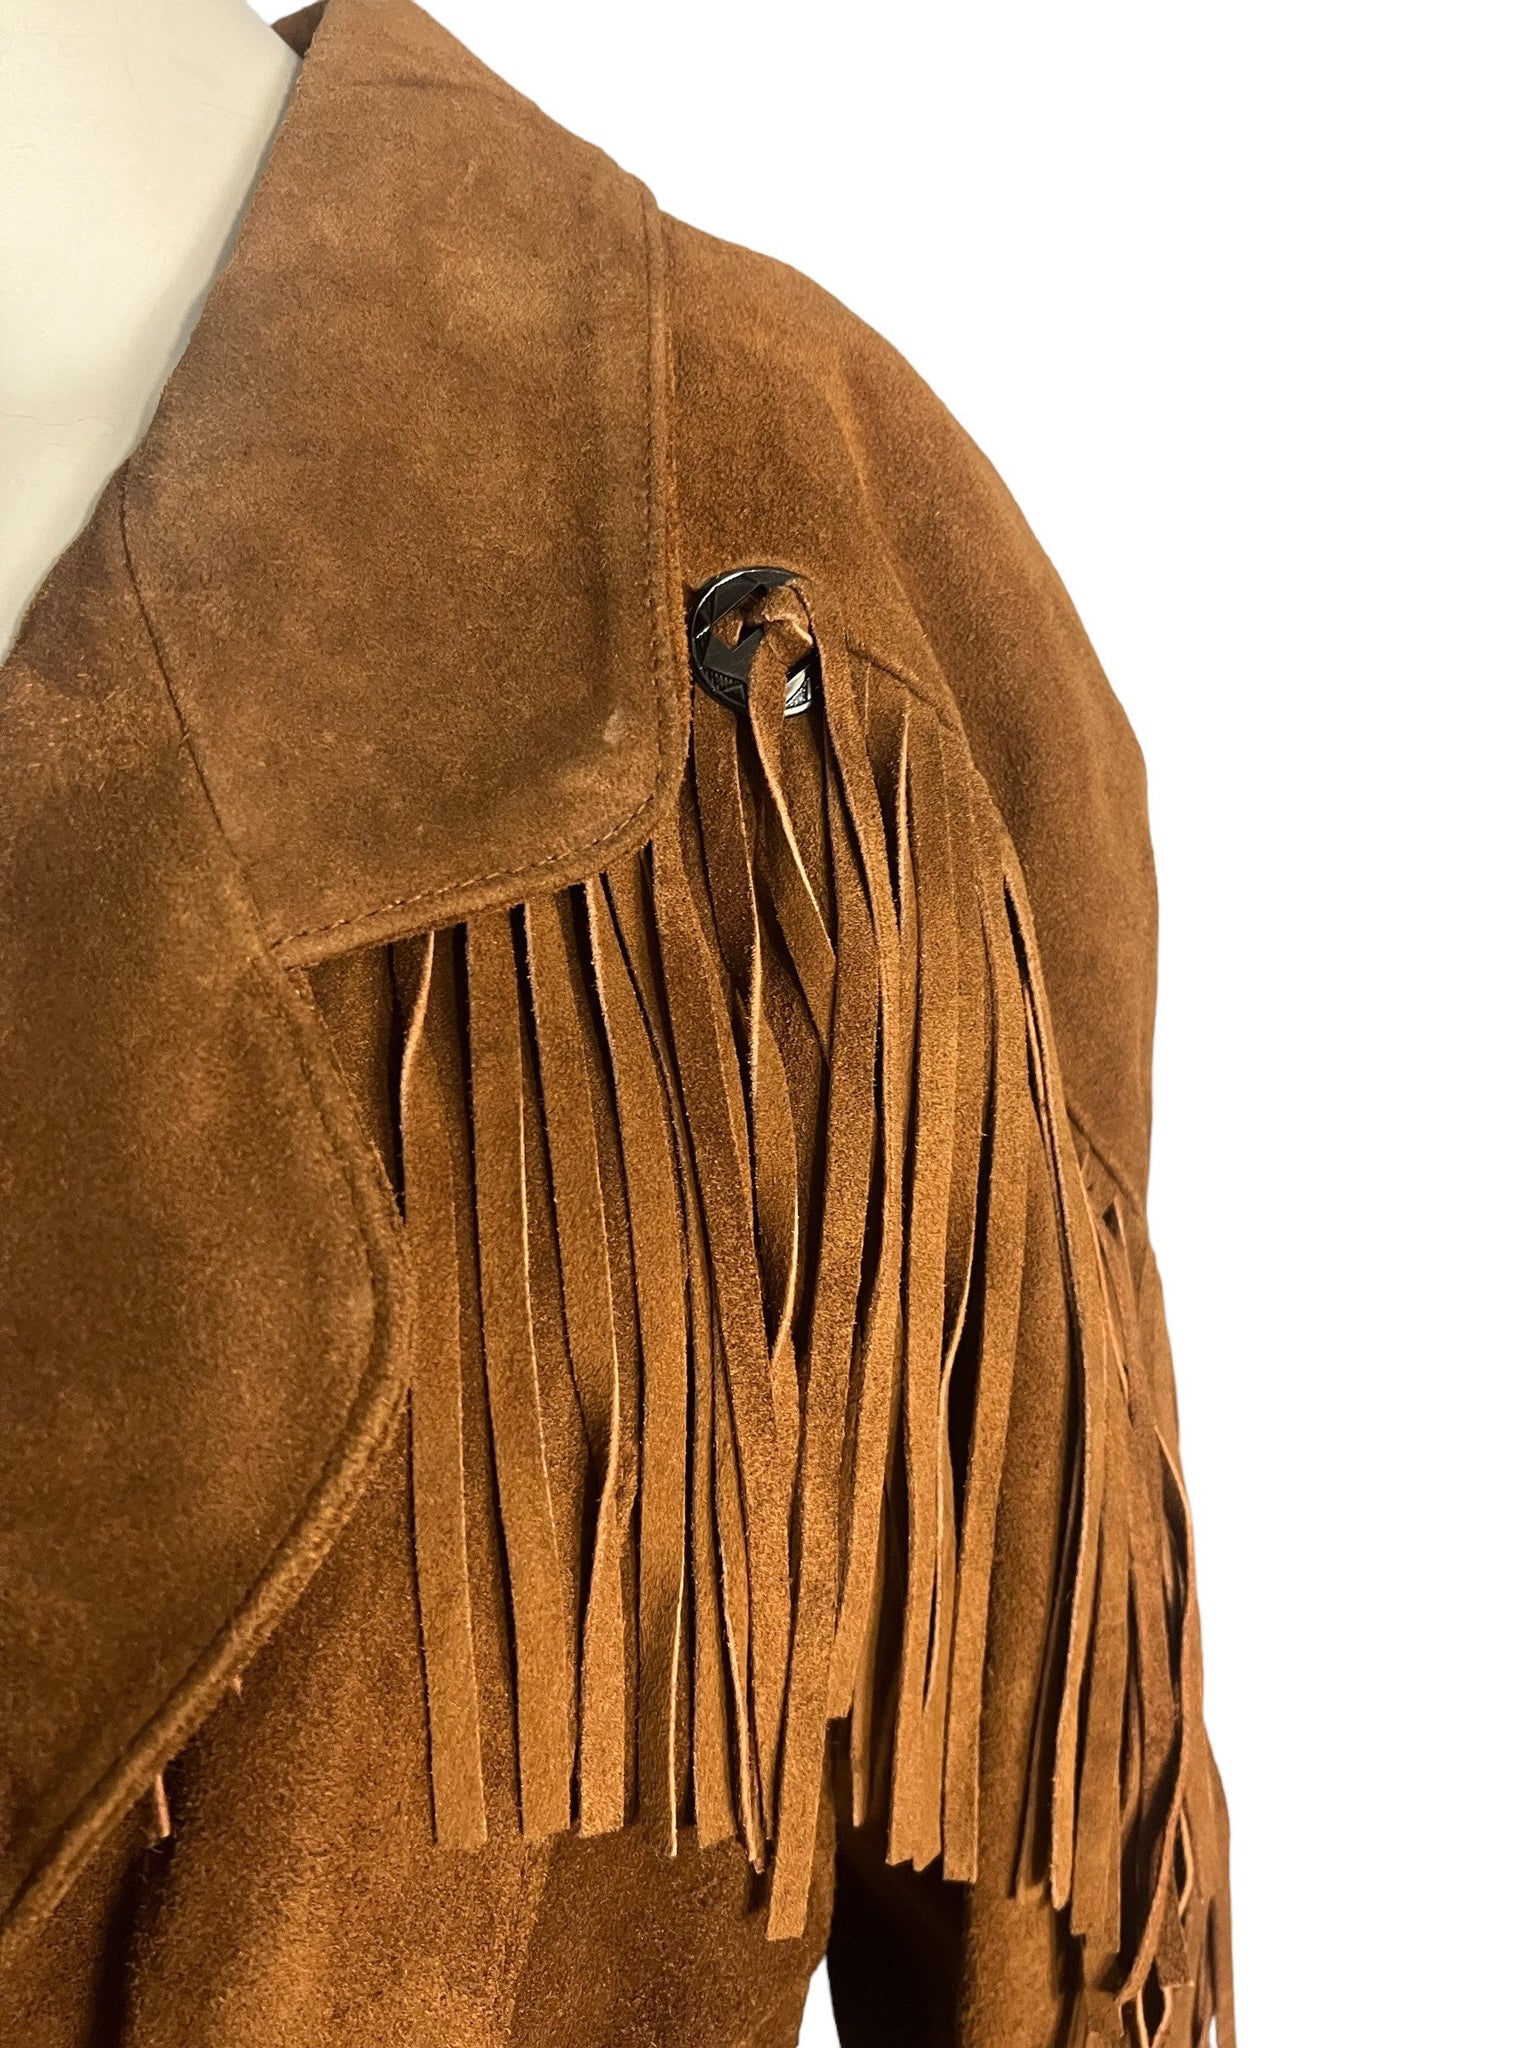 Vintage 80's brown leather fringe jacket M